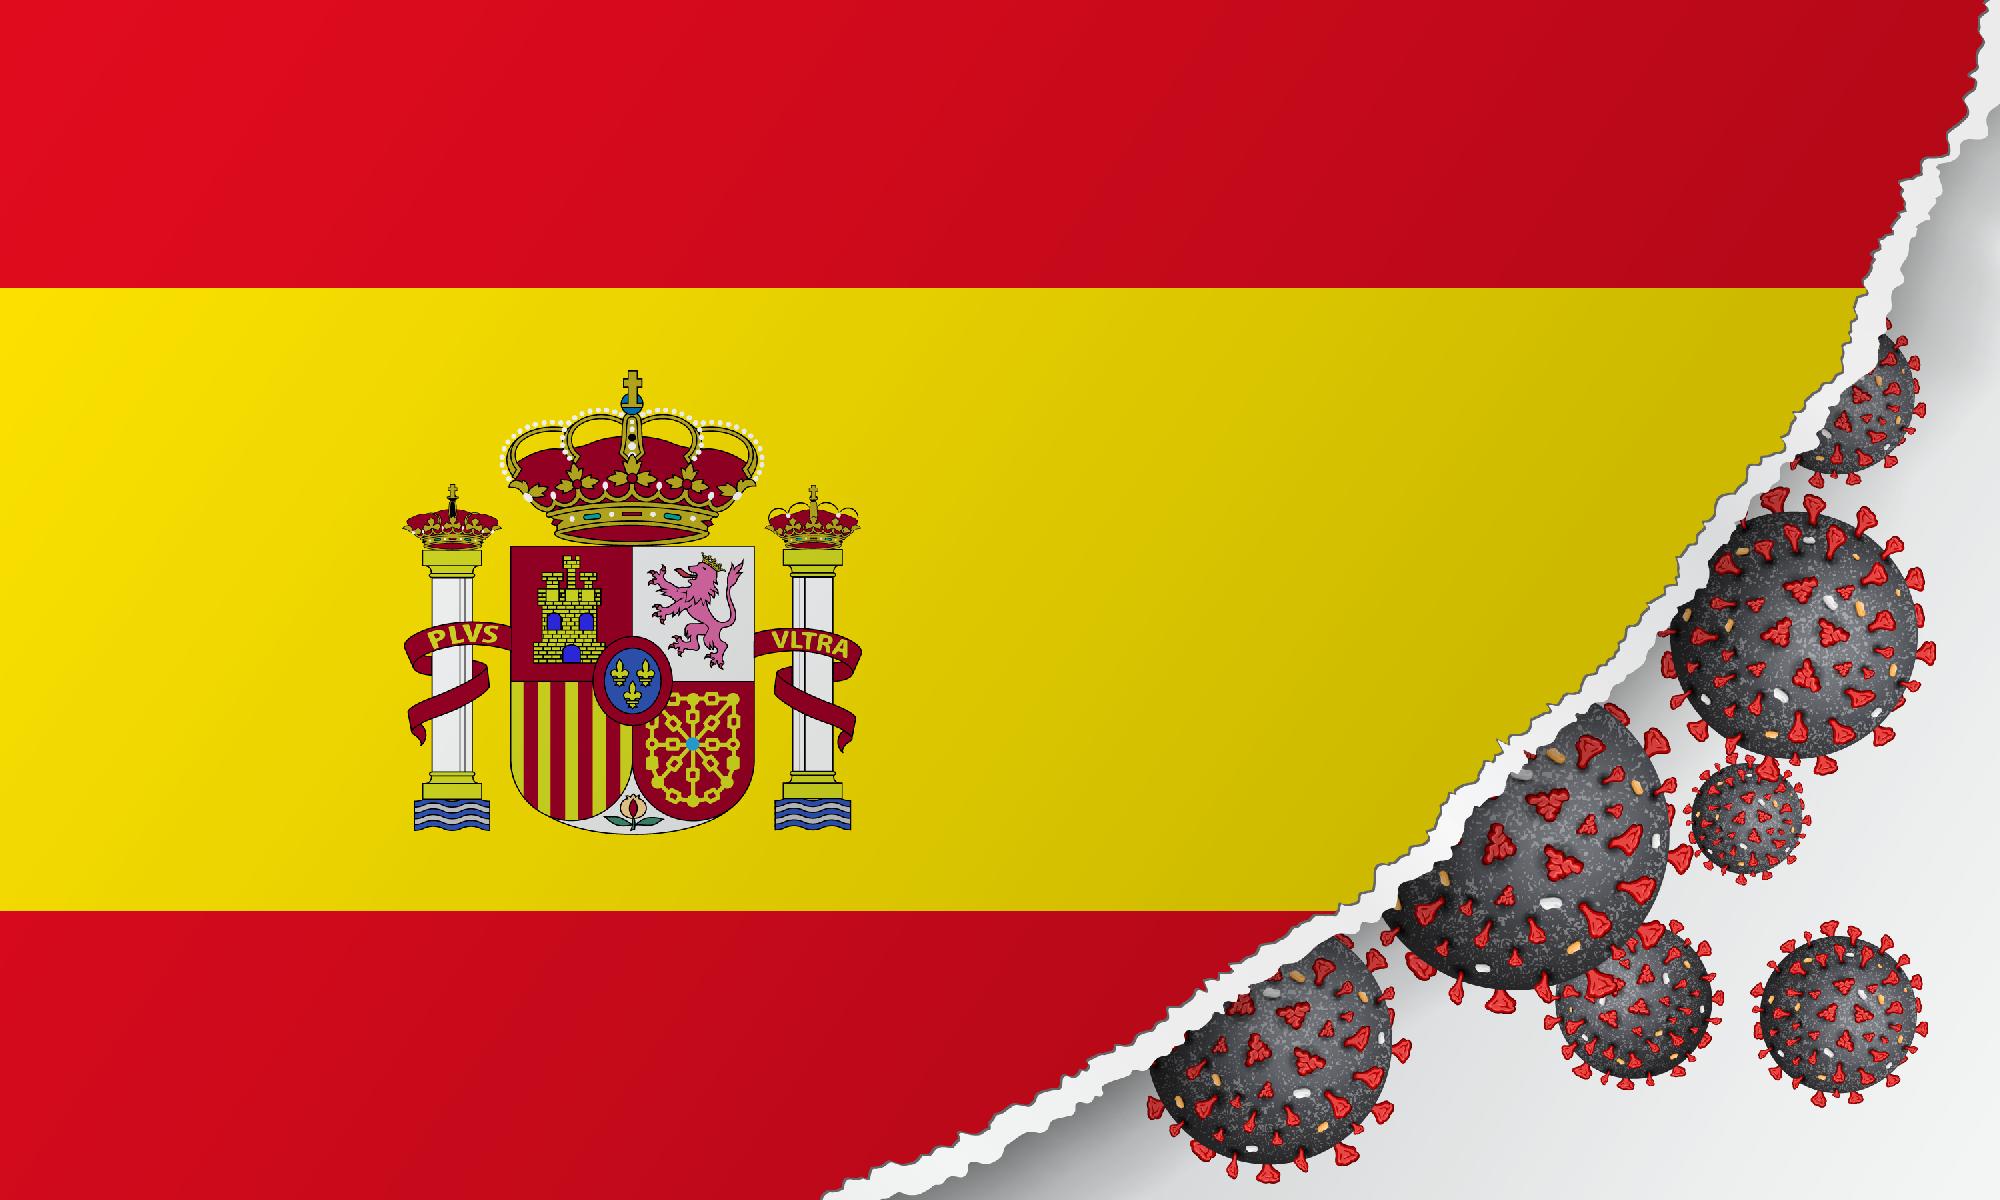  A spanyol parlament májusig tartó szükségállapotról döntött